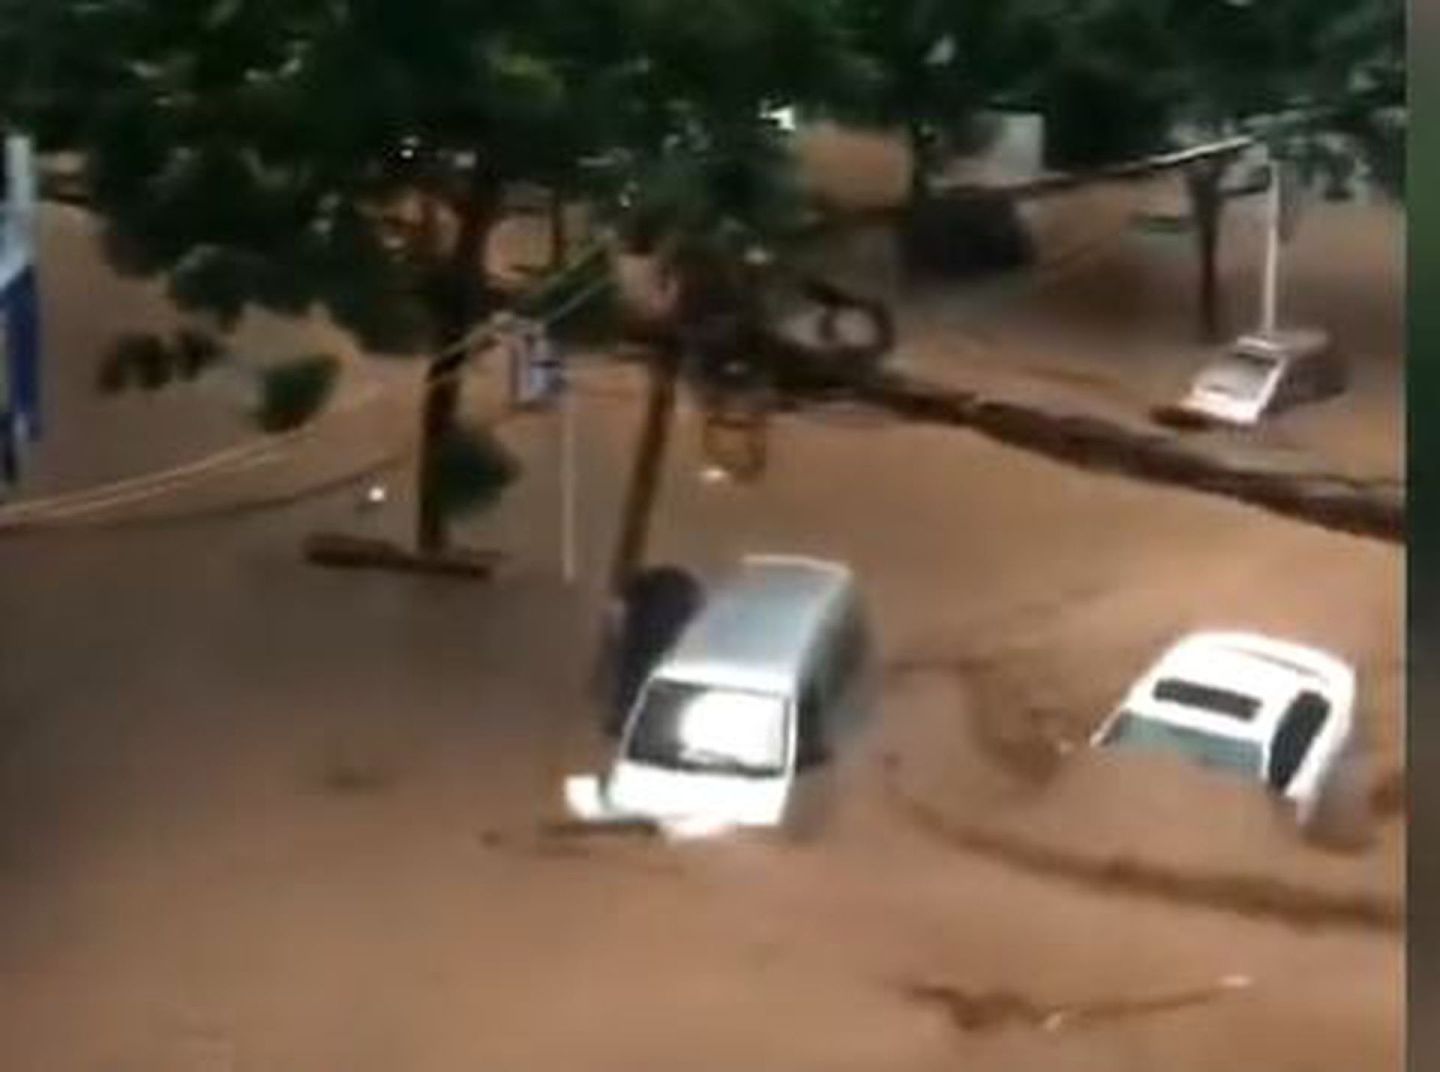 根据网友提供的视频可以看到，寄料镇内街道已被洪水淹没，河水湍急。停放在街道上的多辆汽车随着洪水被冲走，转瞬间，一辆小轿车就被冲入河中，淹没在河水里消失不见。（视频截图）